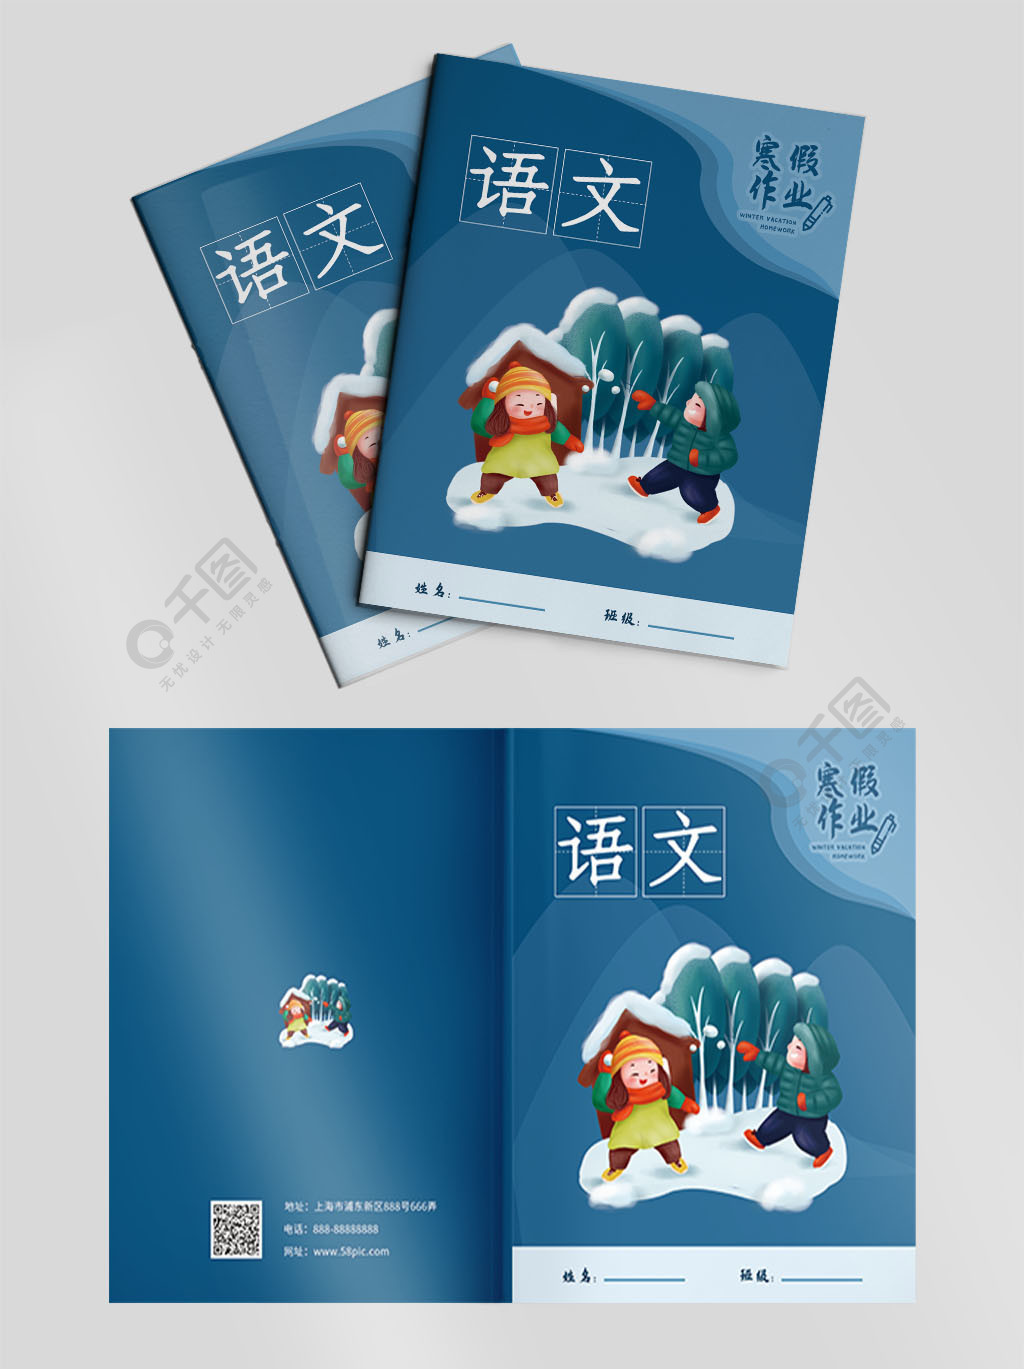 寒假作业语文书皮封面1年前发布